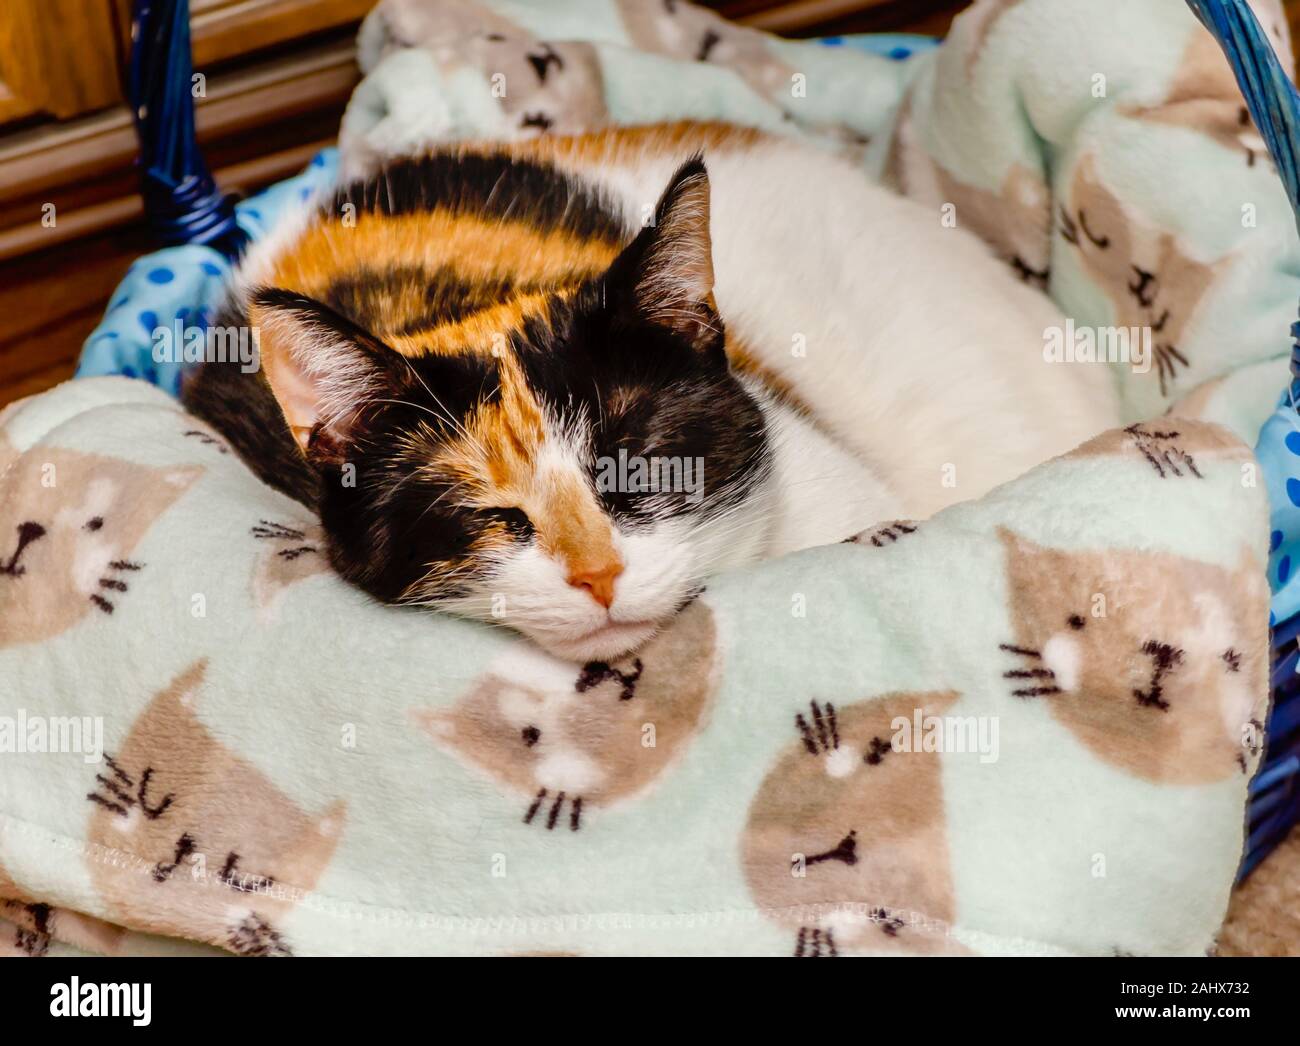 La zucca, un gatto calico di quattro anni, si trova in un cestino con una coperta a tema gatto, il 29 dicembre 2019, a Coden, Alabama. Foto Stock